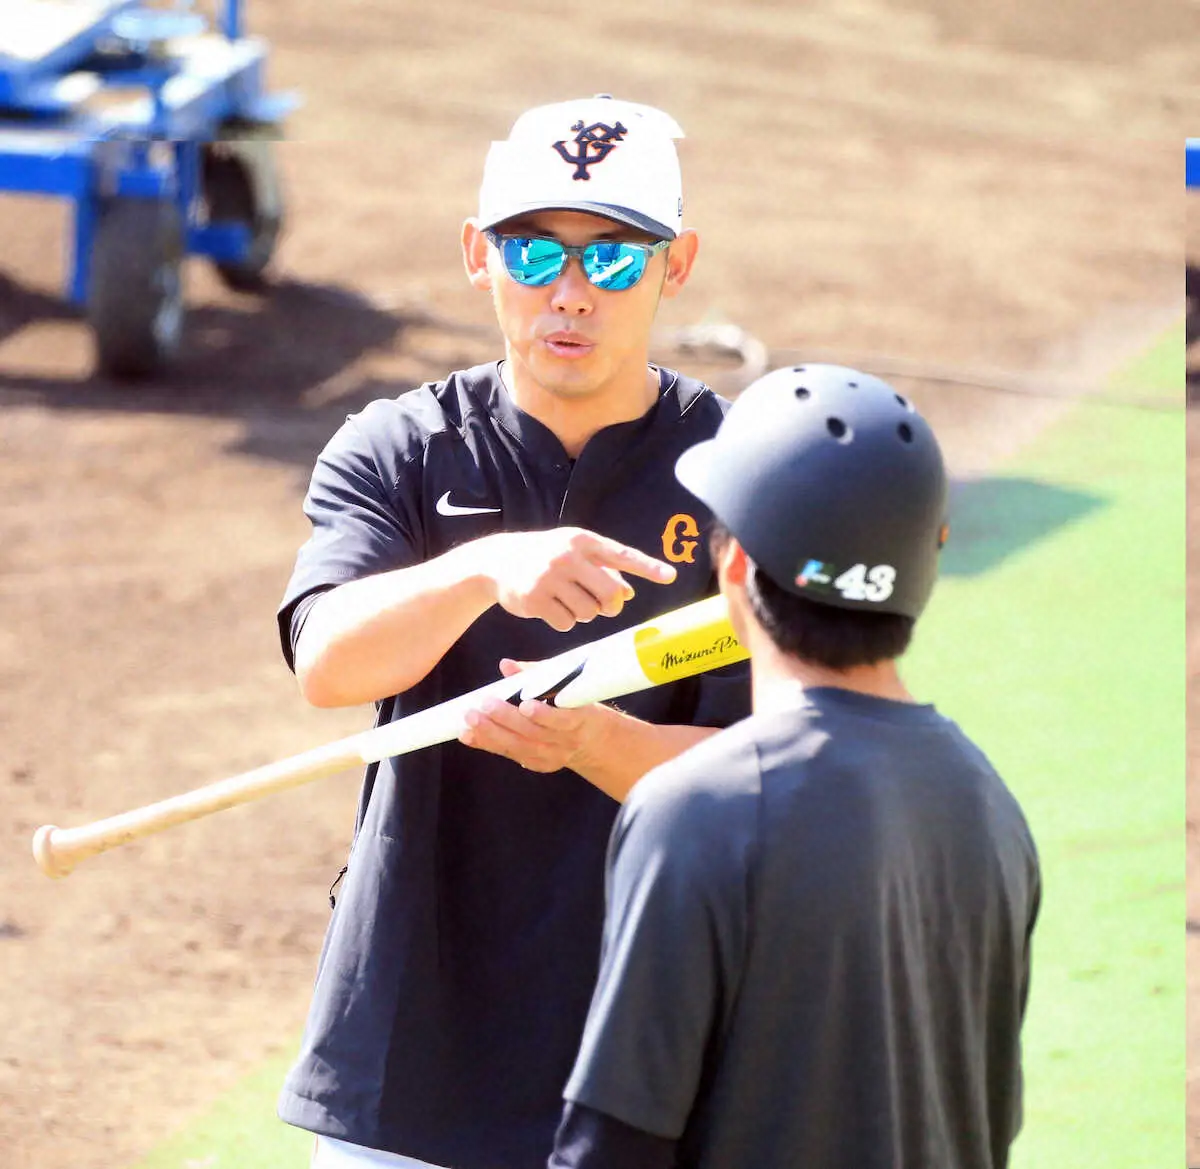 巨人・矢野新コーチ「担当は声出し、元気担当コーチです」　8年ぶりの古巣復帰で「明るく楽しく陽気に」